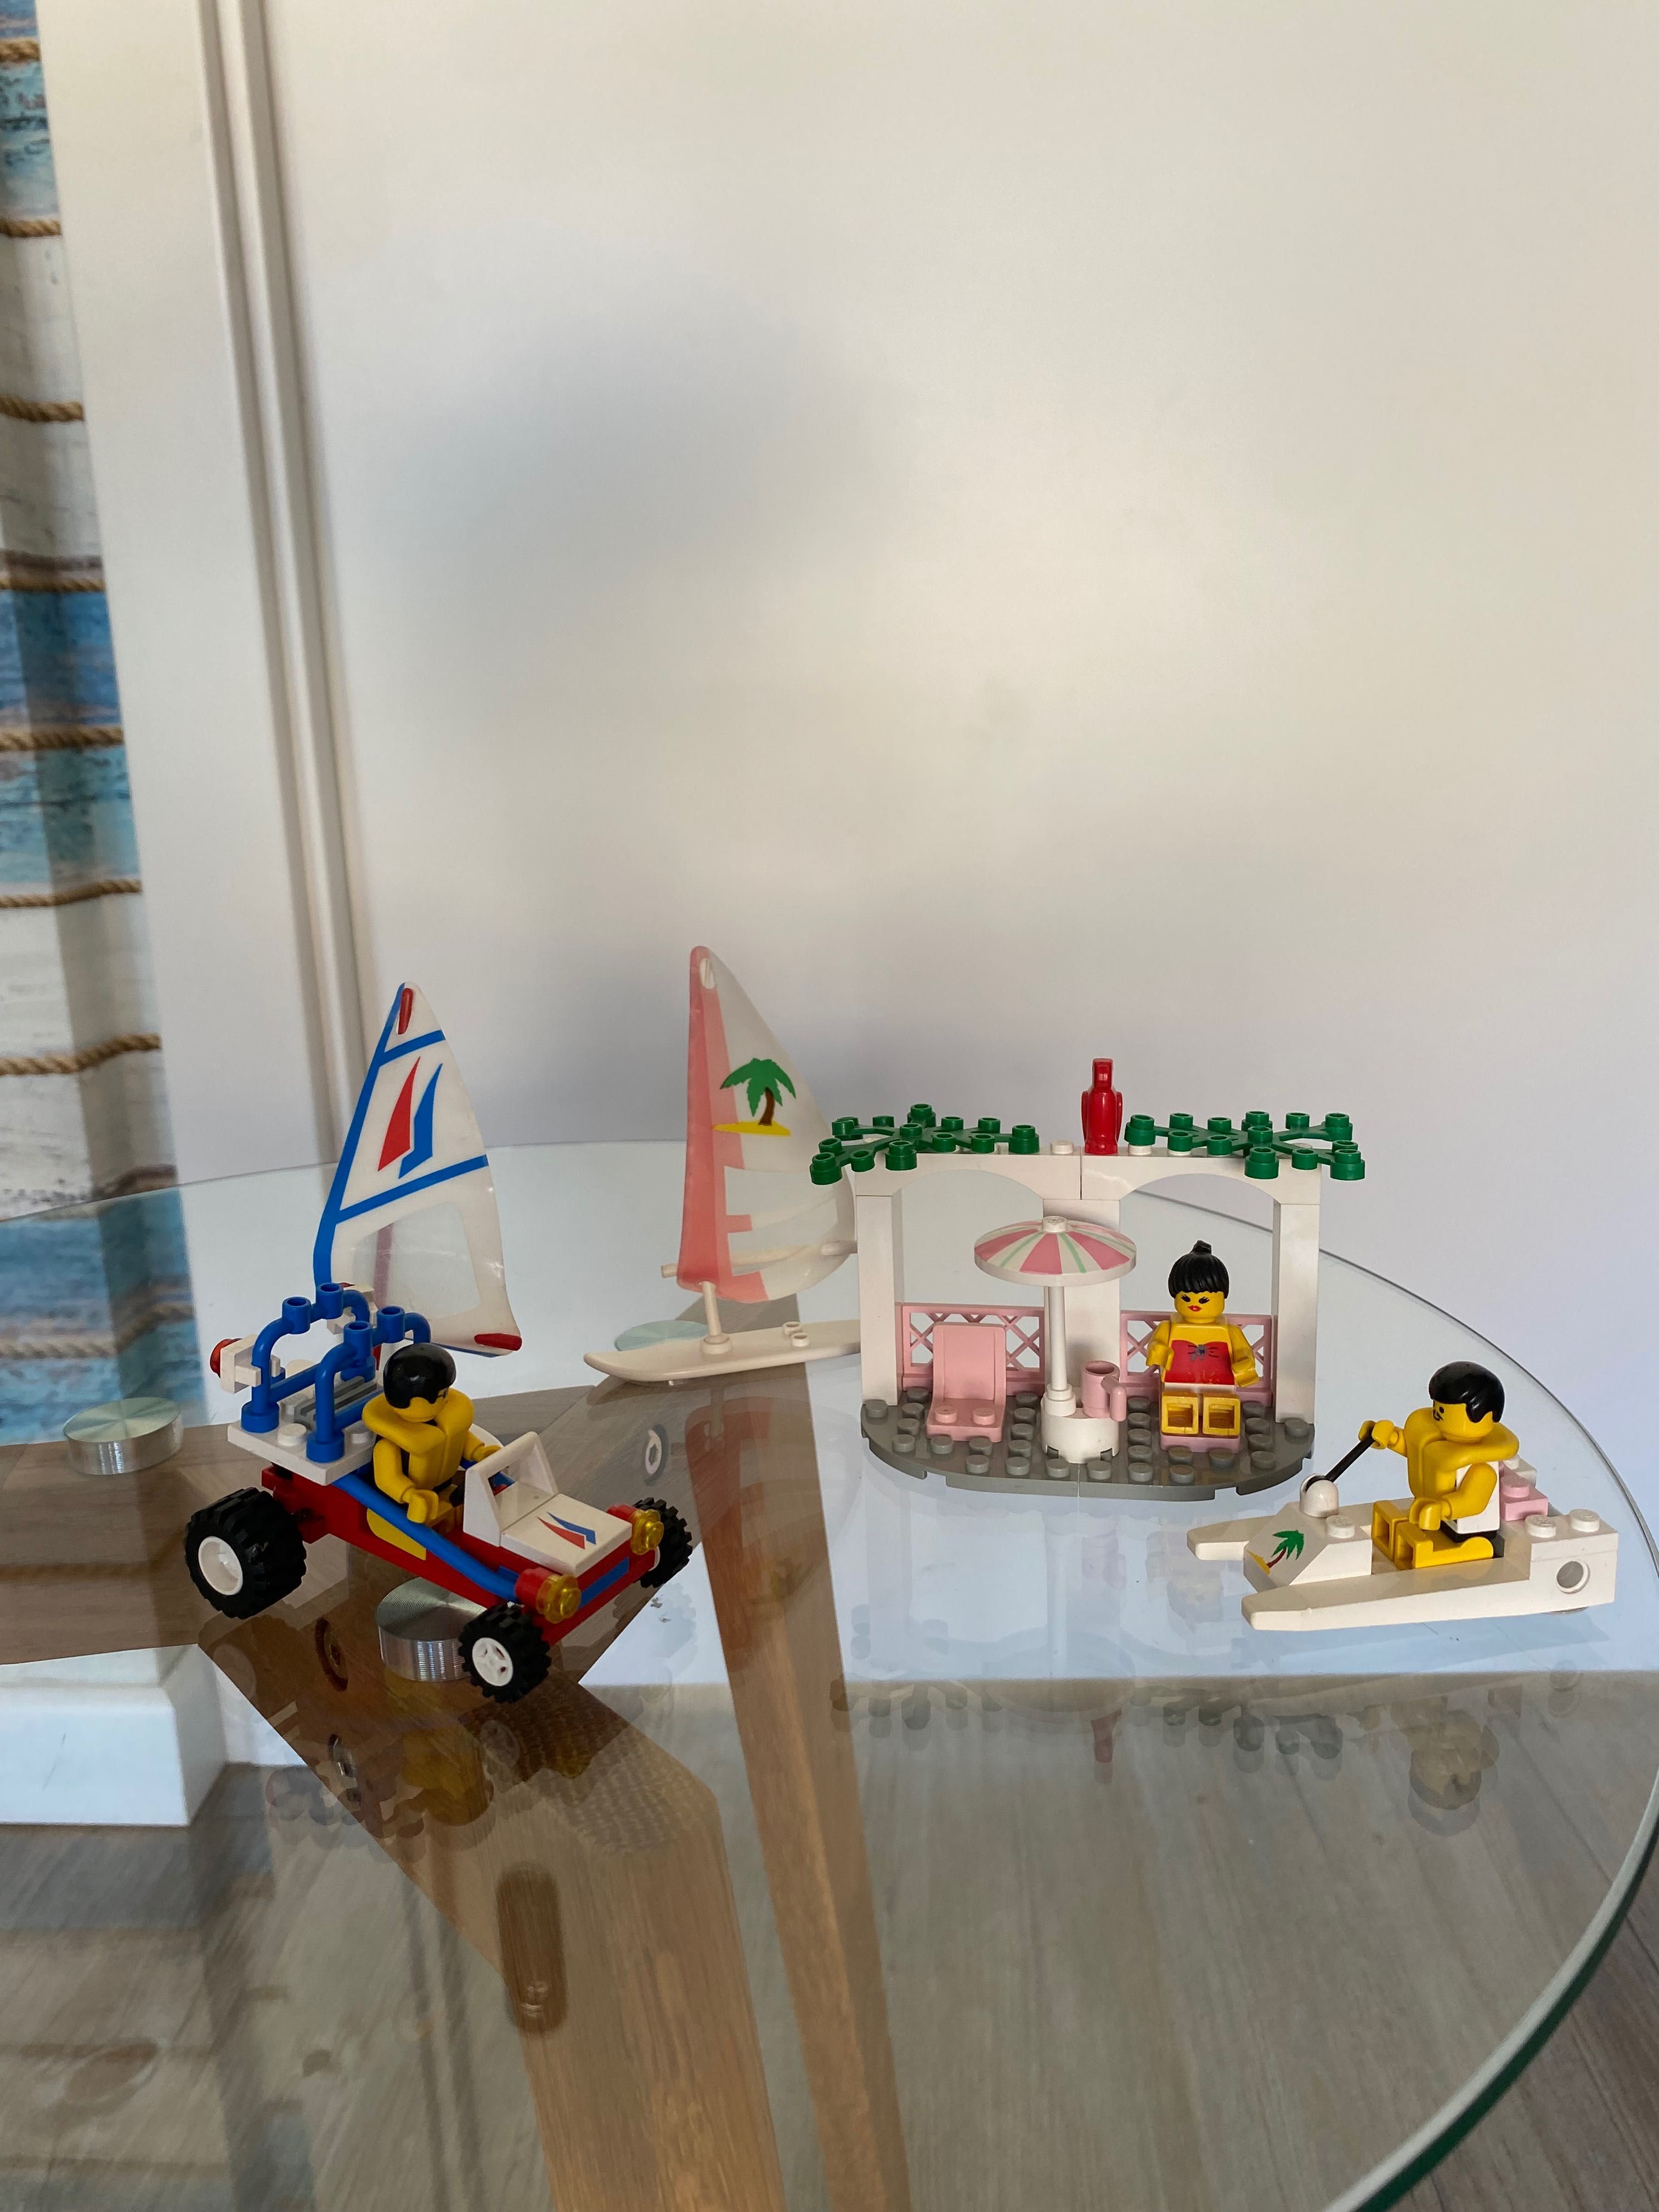 LEGO zestaw kolekcjonerski 6401 + 6534 Plaża